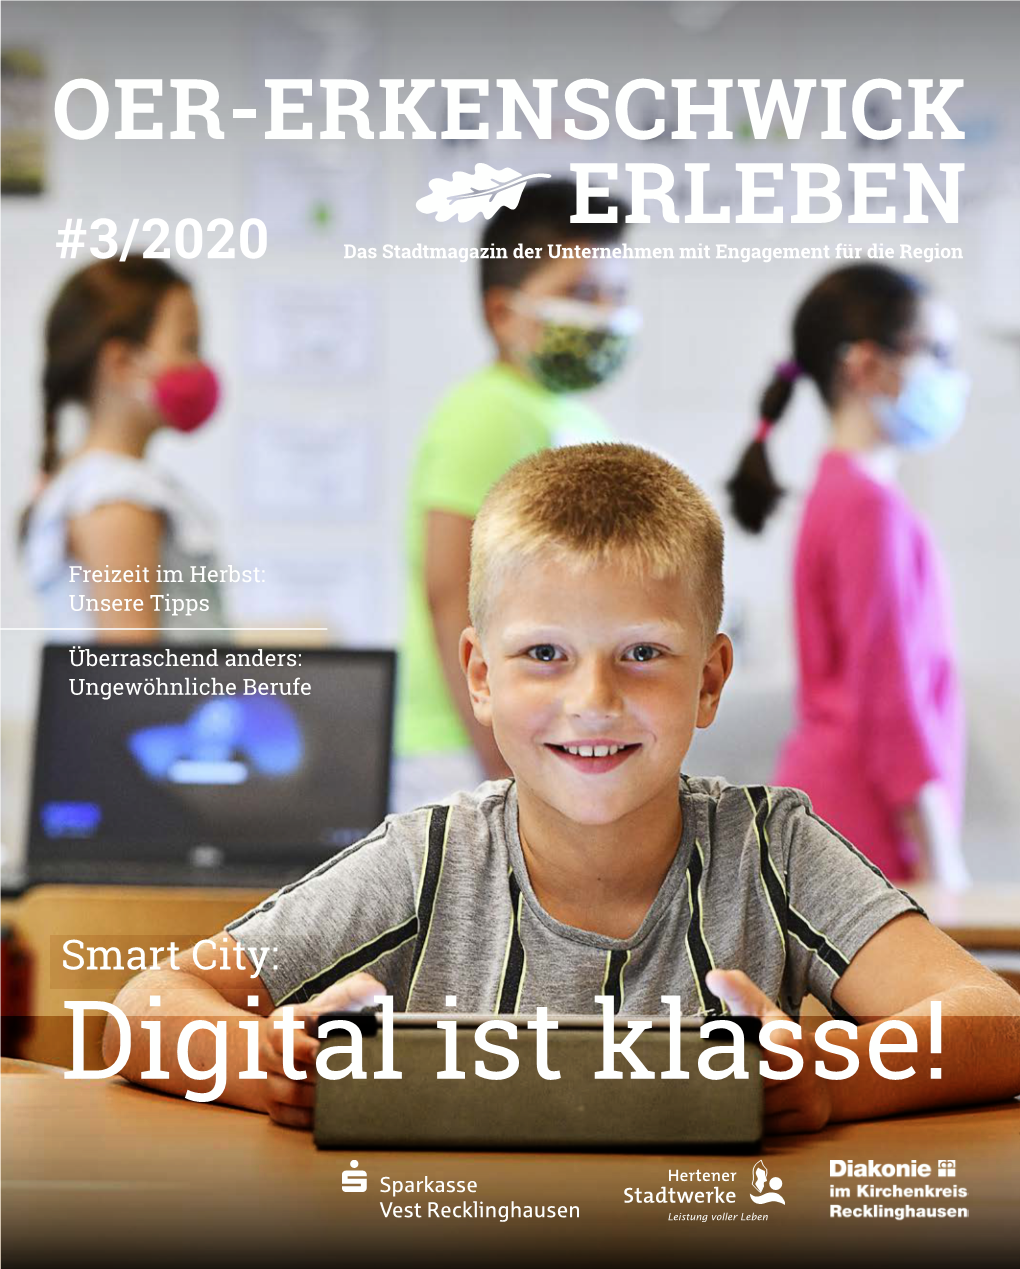 OER-ERKENSCHWICK ERLEBEN #3/2020 Das Stadtmagazin Der Unternehmen Mit Engagement Für Die Region